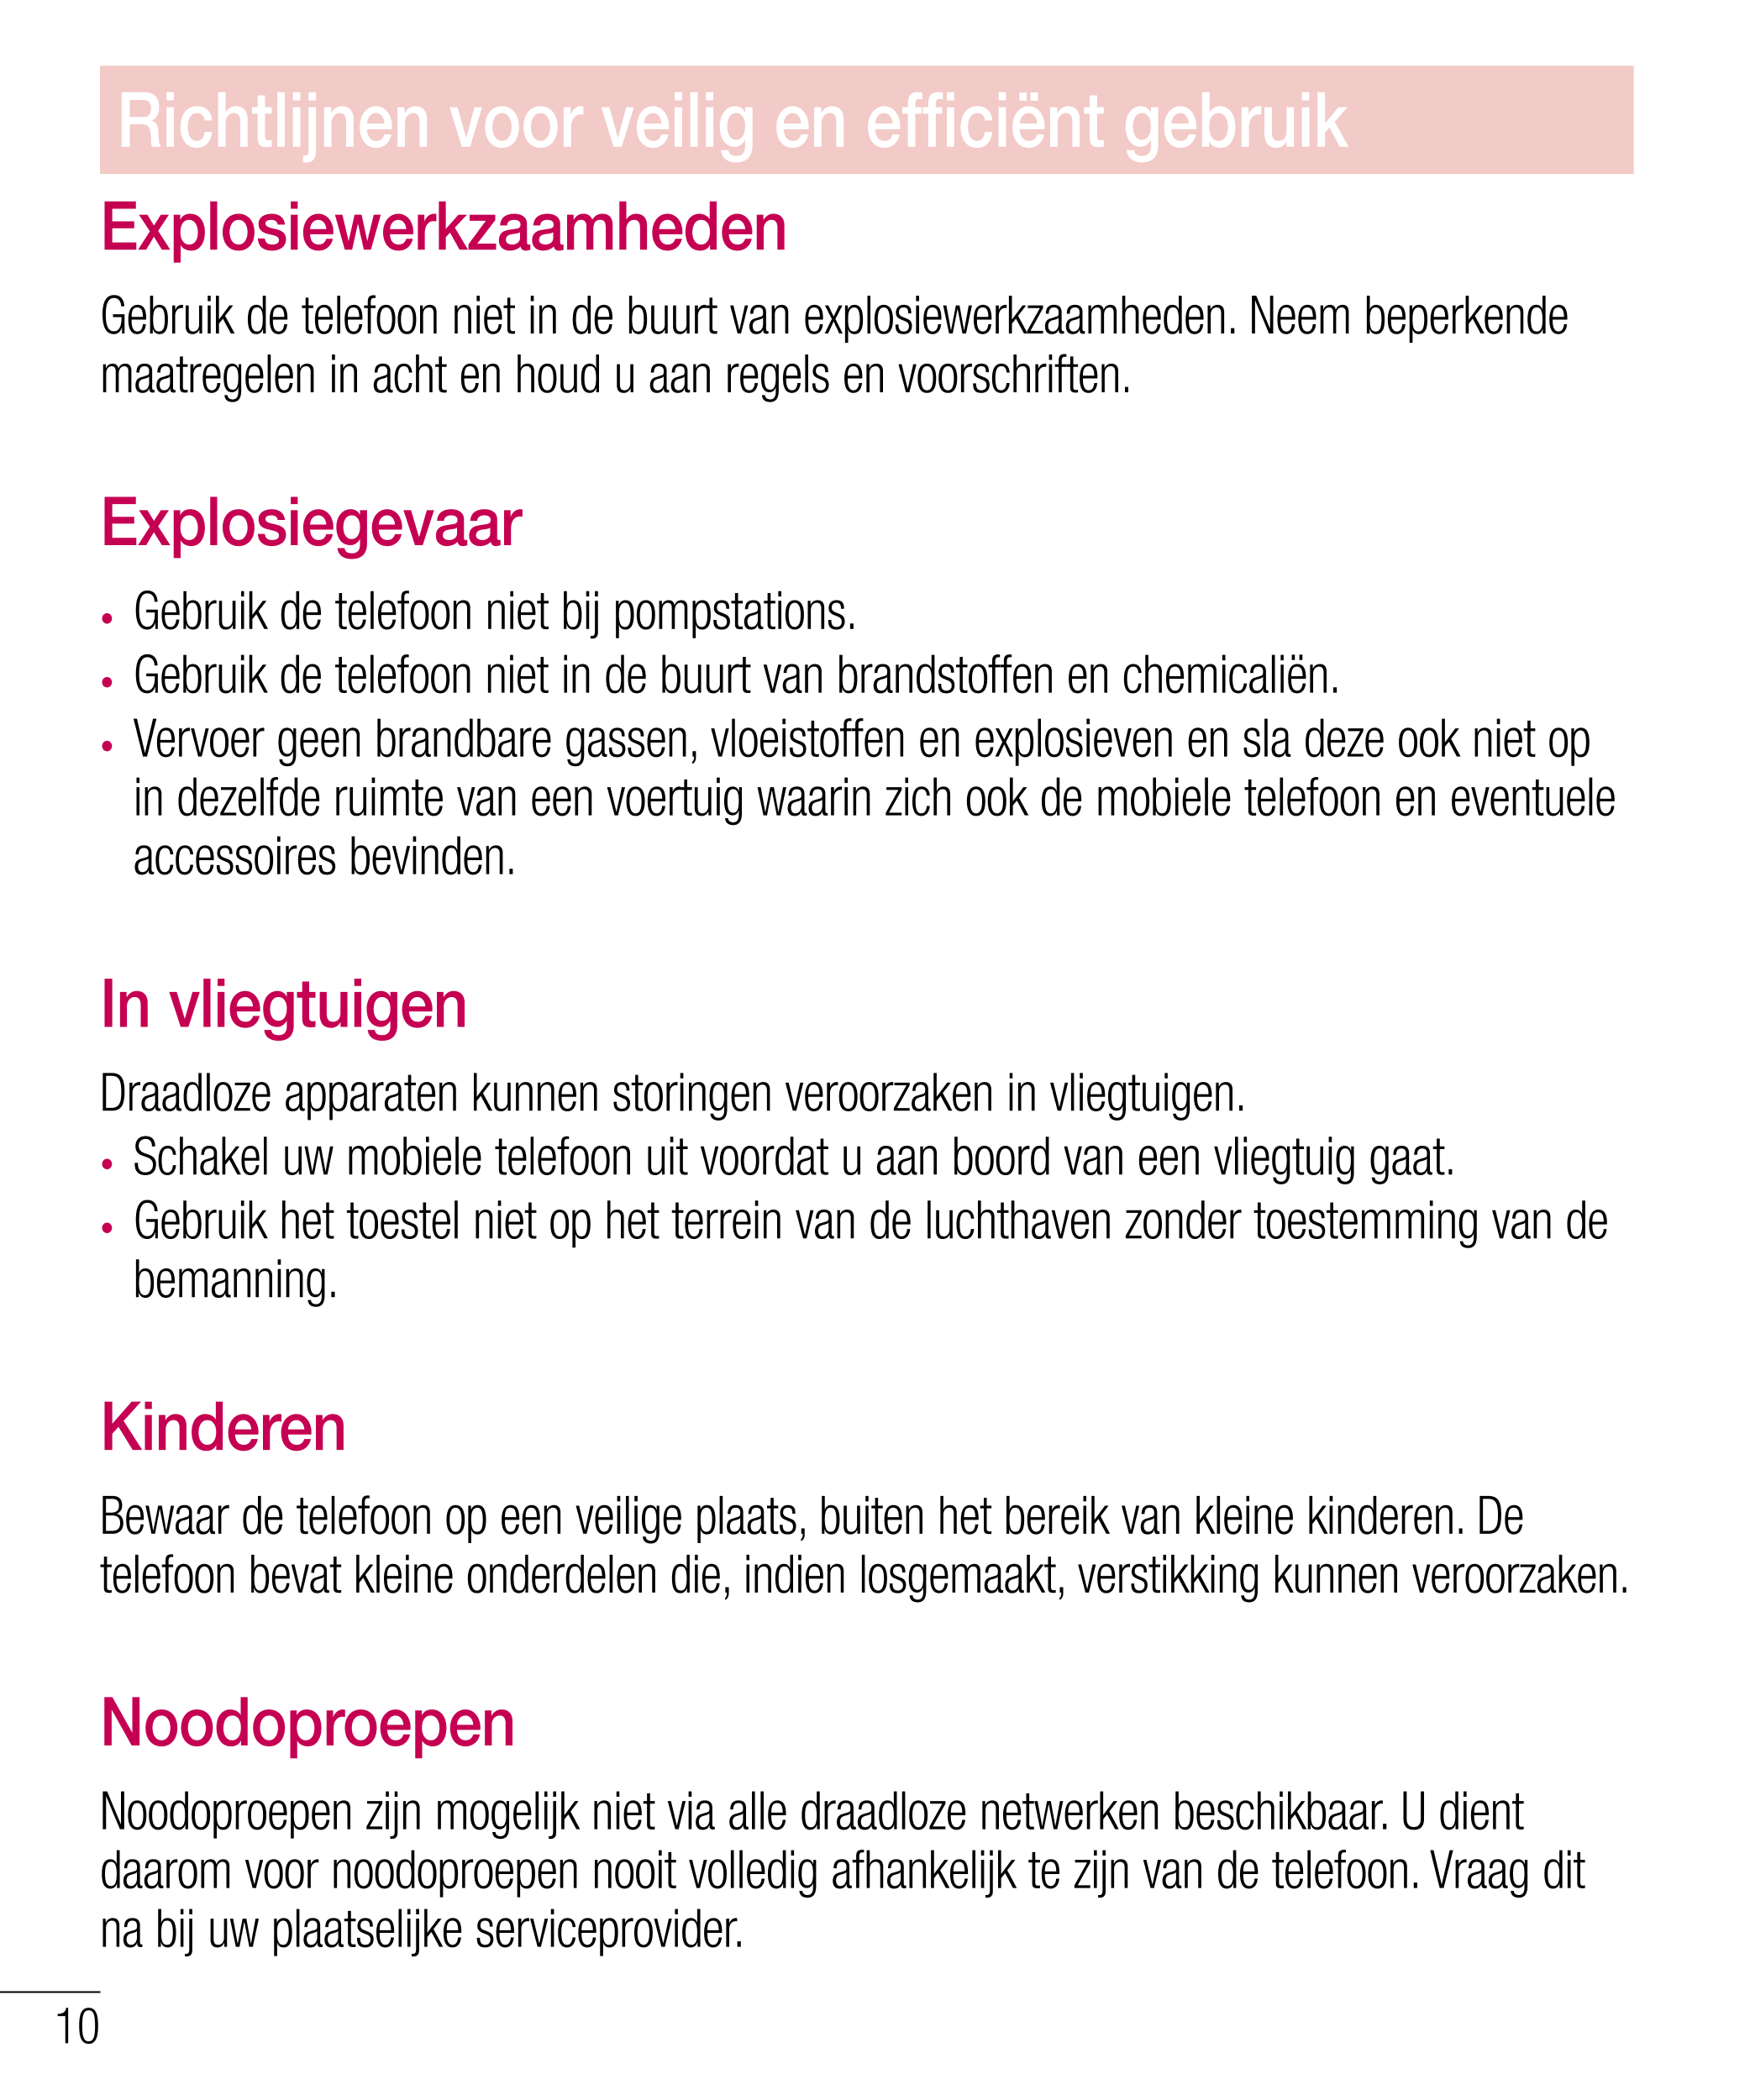 Richtlijnen voor veilig en effi ciënt gebruik
Explosiewerkzaamheden
Gebruik de telefoon niet in de buurt van explosiewerkzaamhed